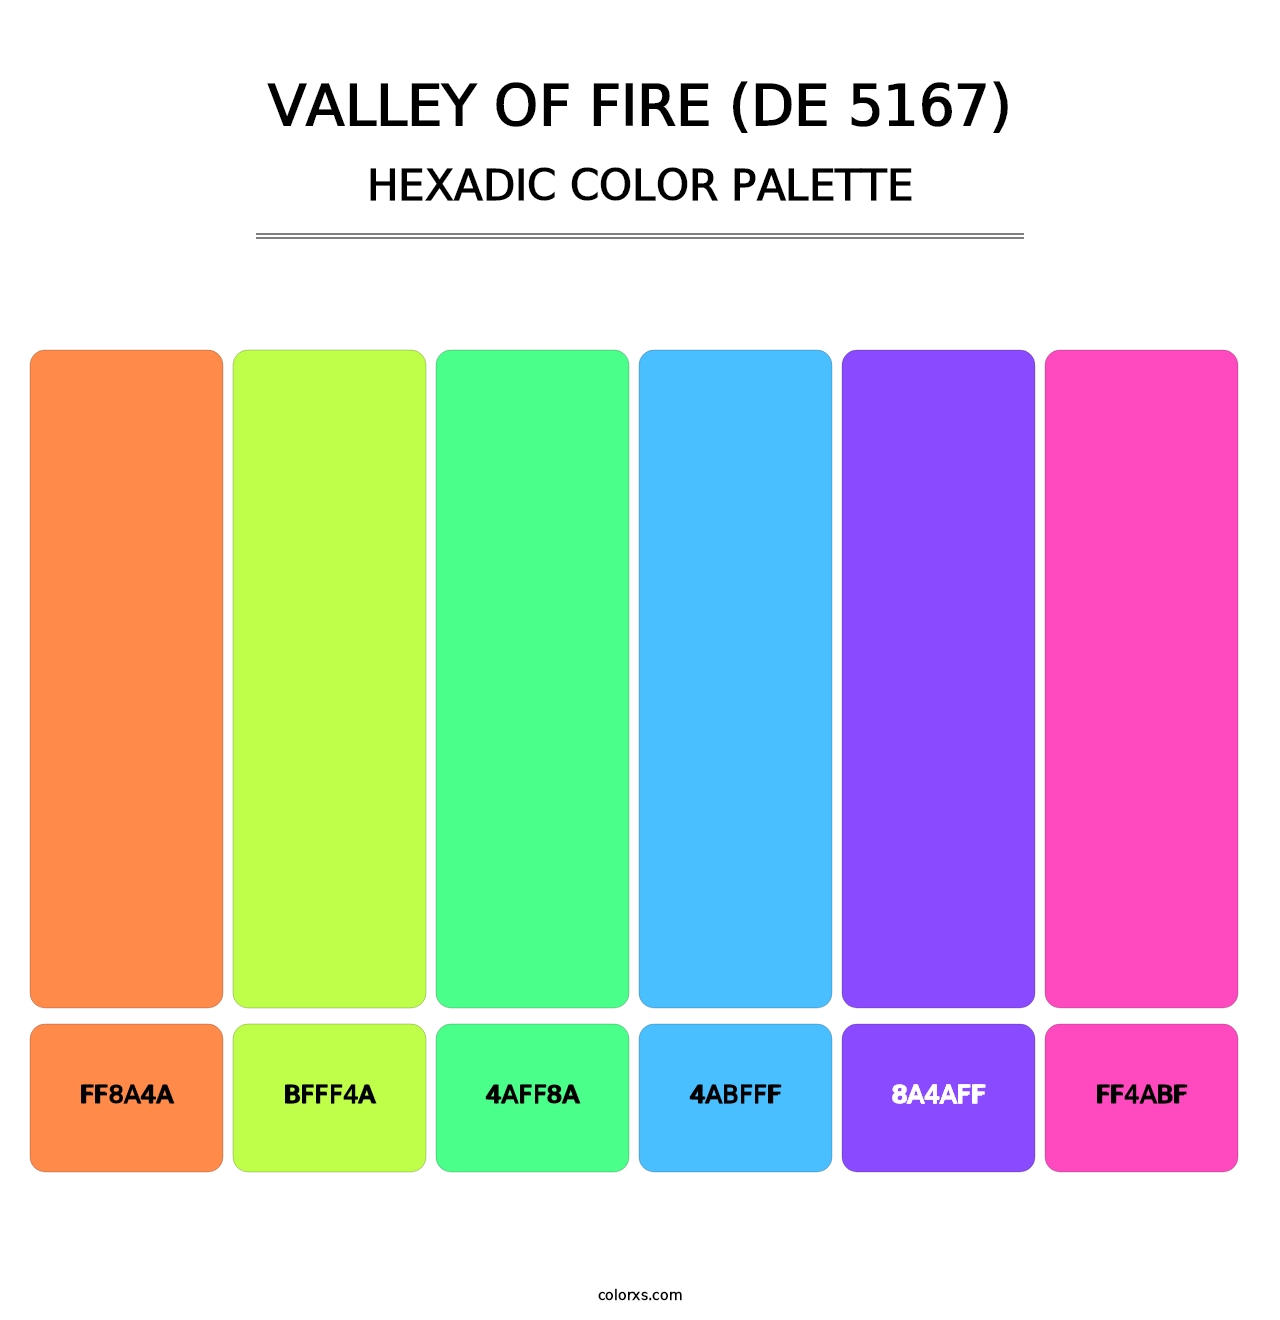 Valley of Fire (DE 5167) - Hexadic Color Palette